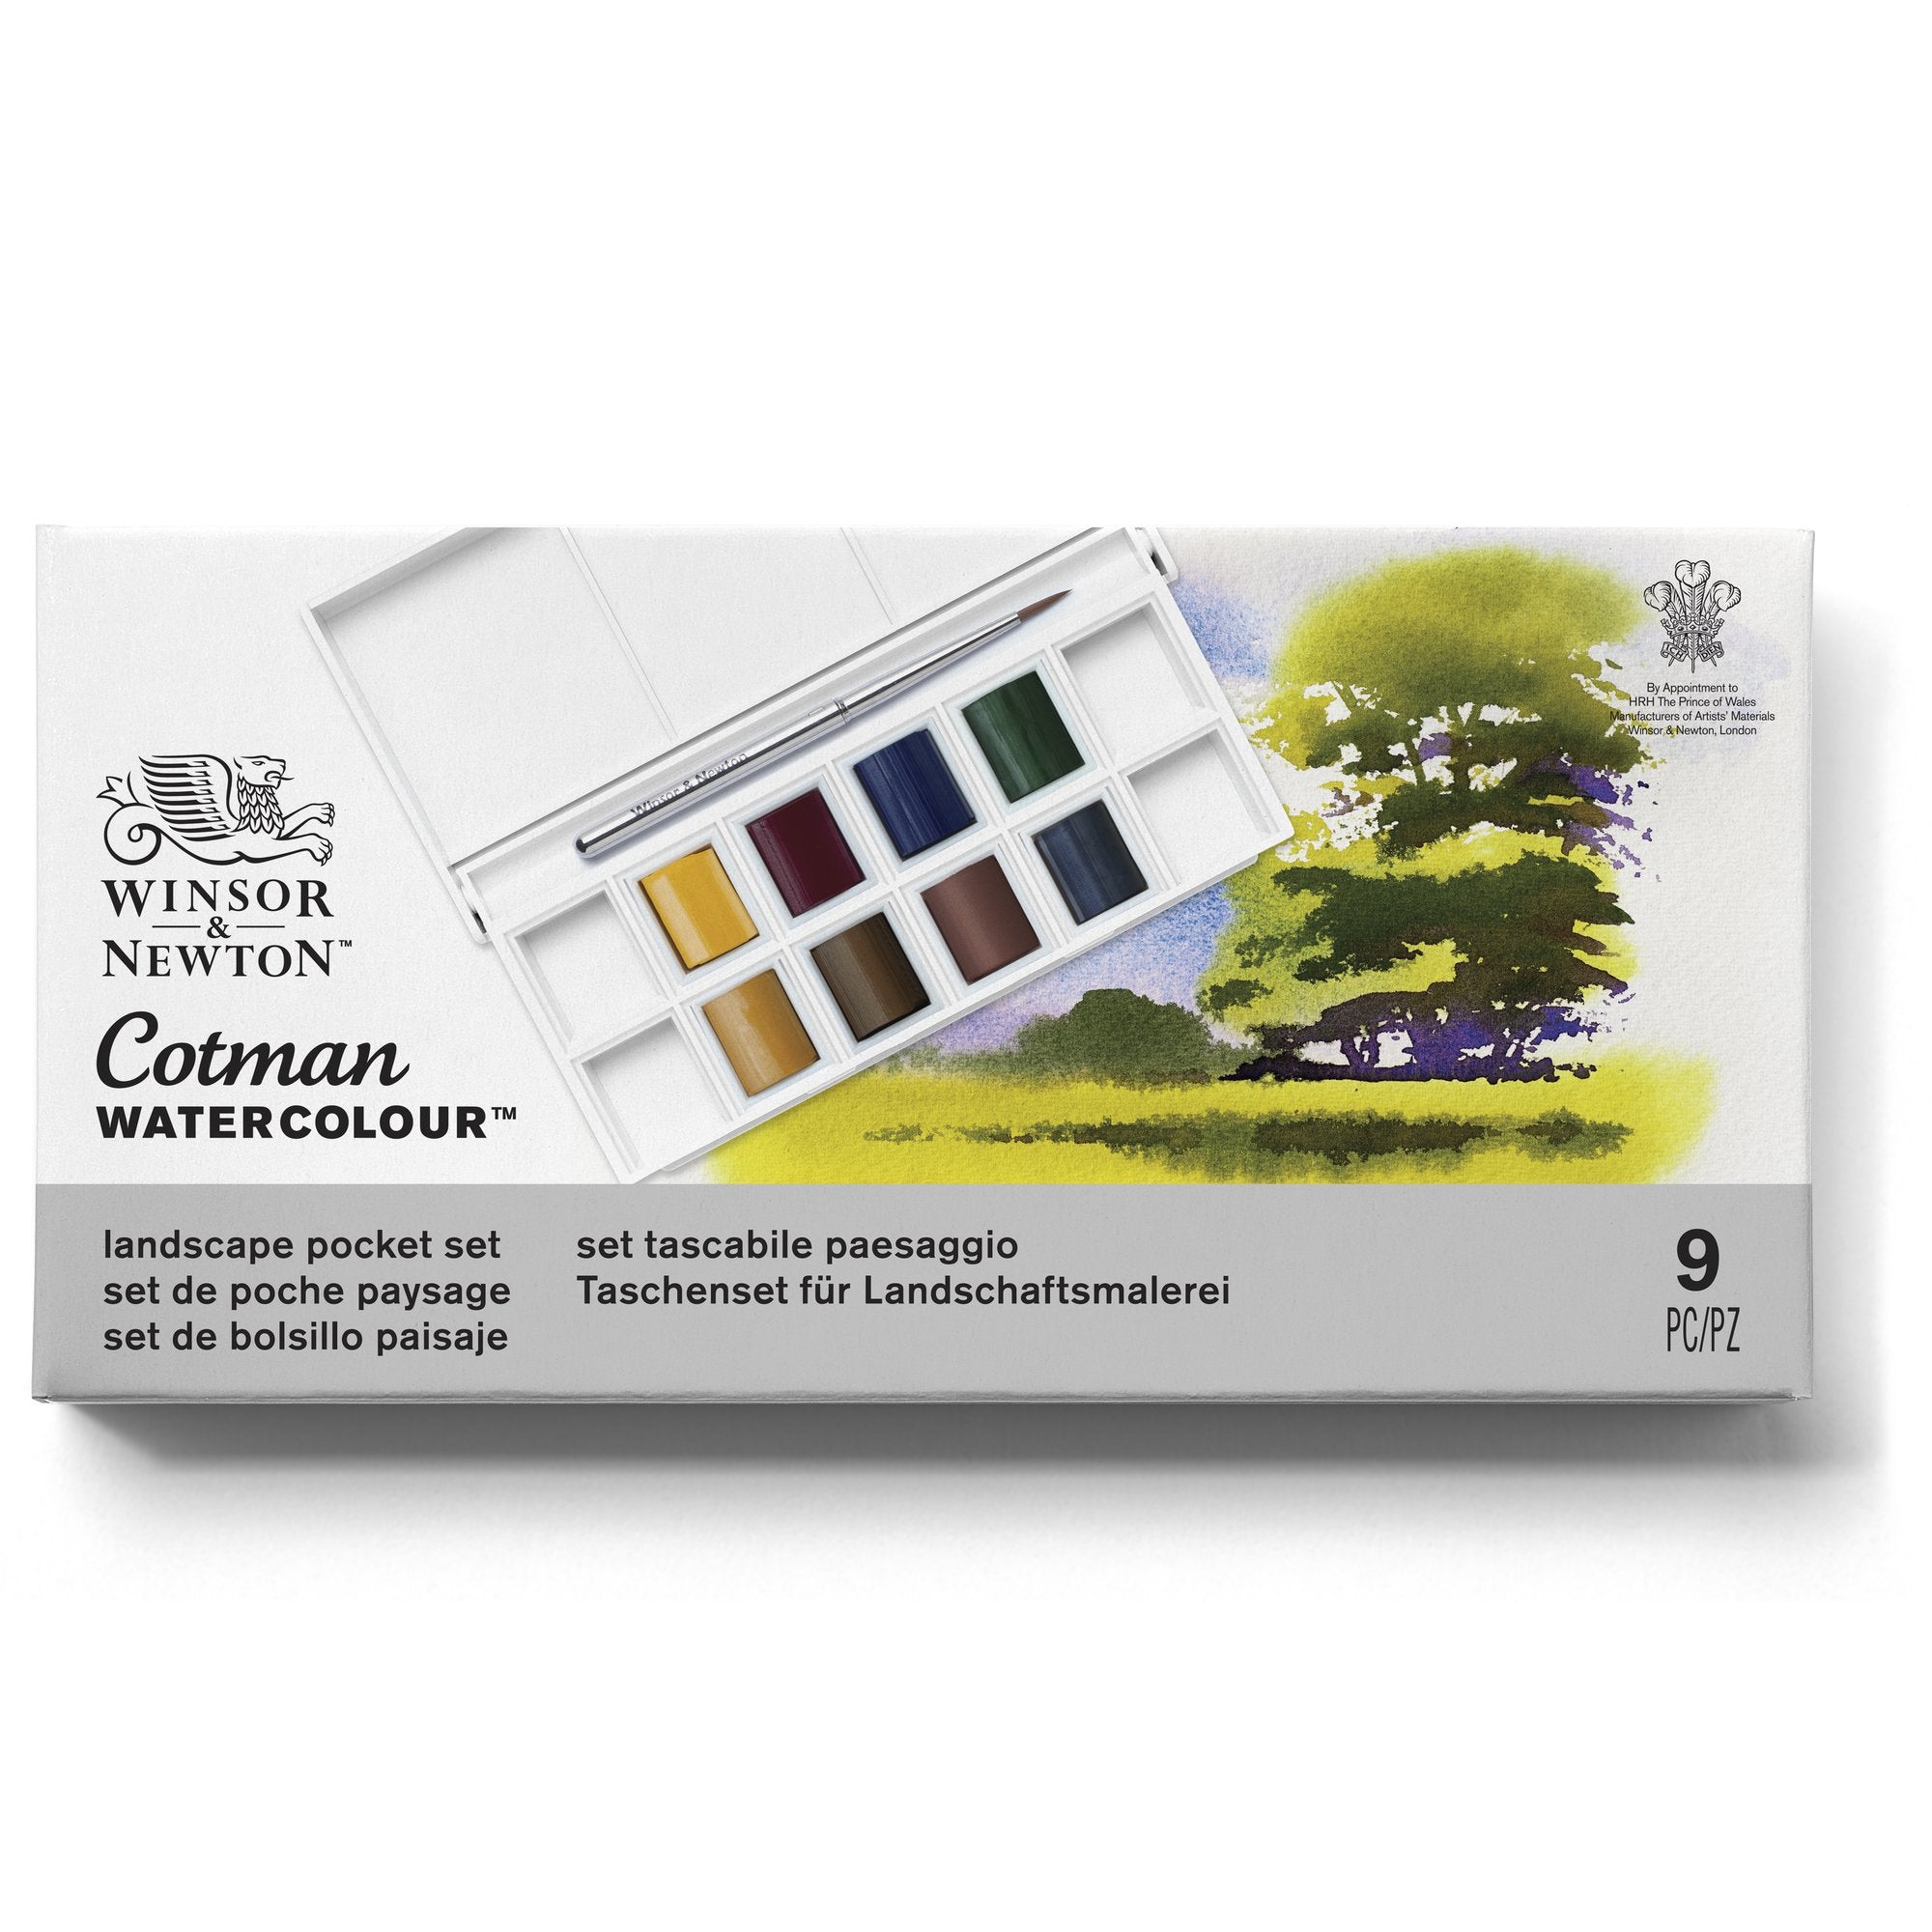 Winsor & Newton Cotman Watercolour LANDSCAPE Pocket Set